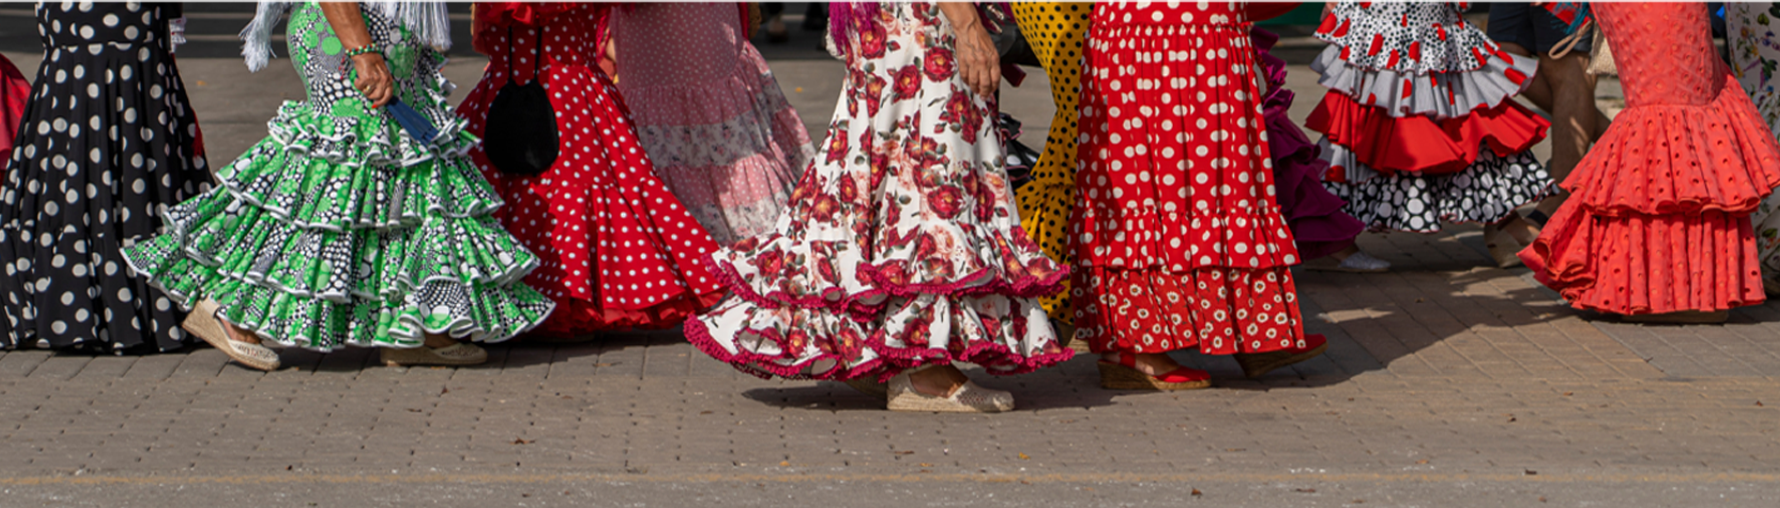 un grupo de mujeres con vestidos de flamenco caminan por la acera